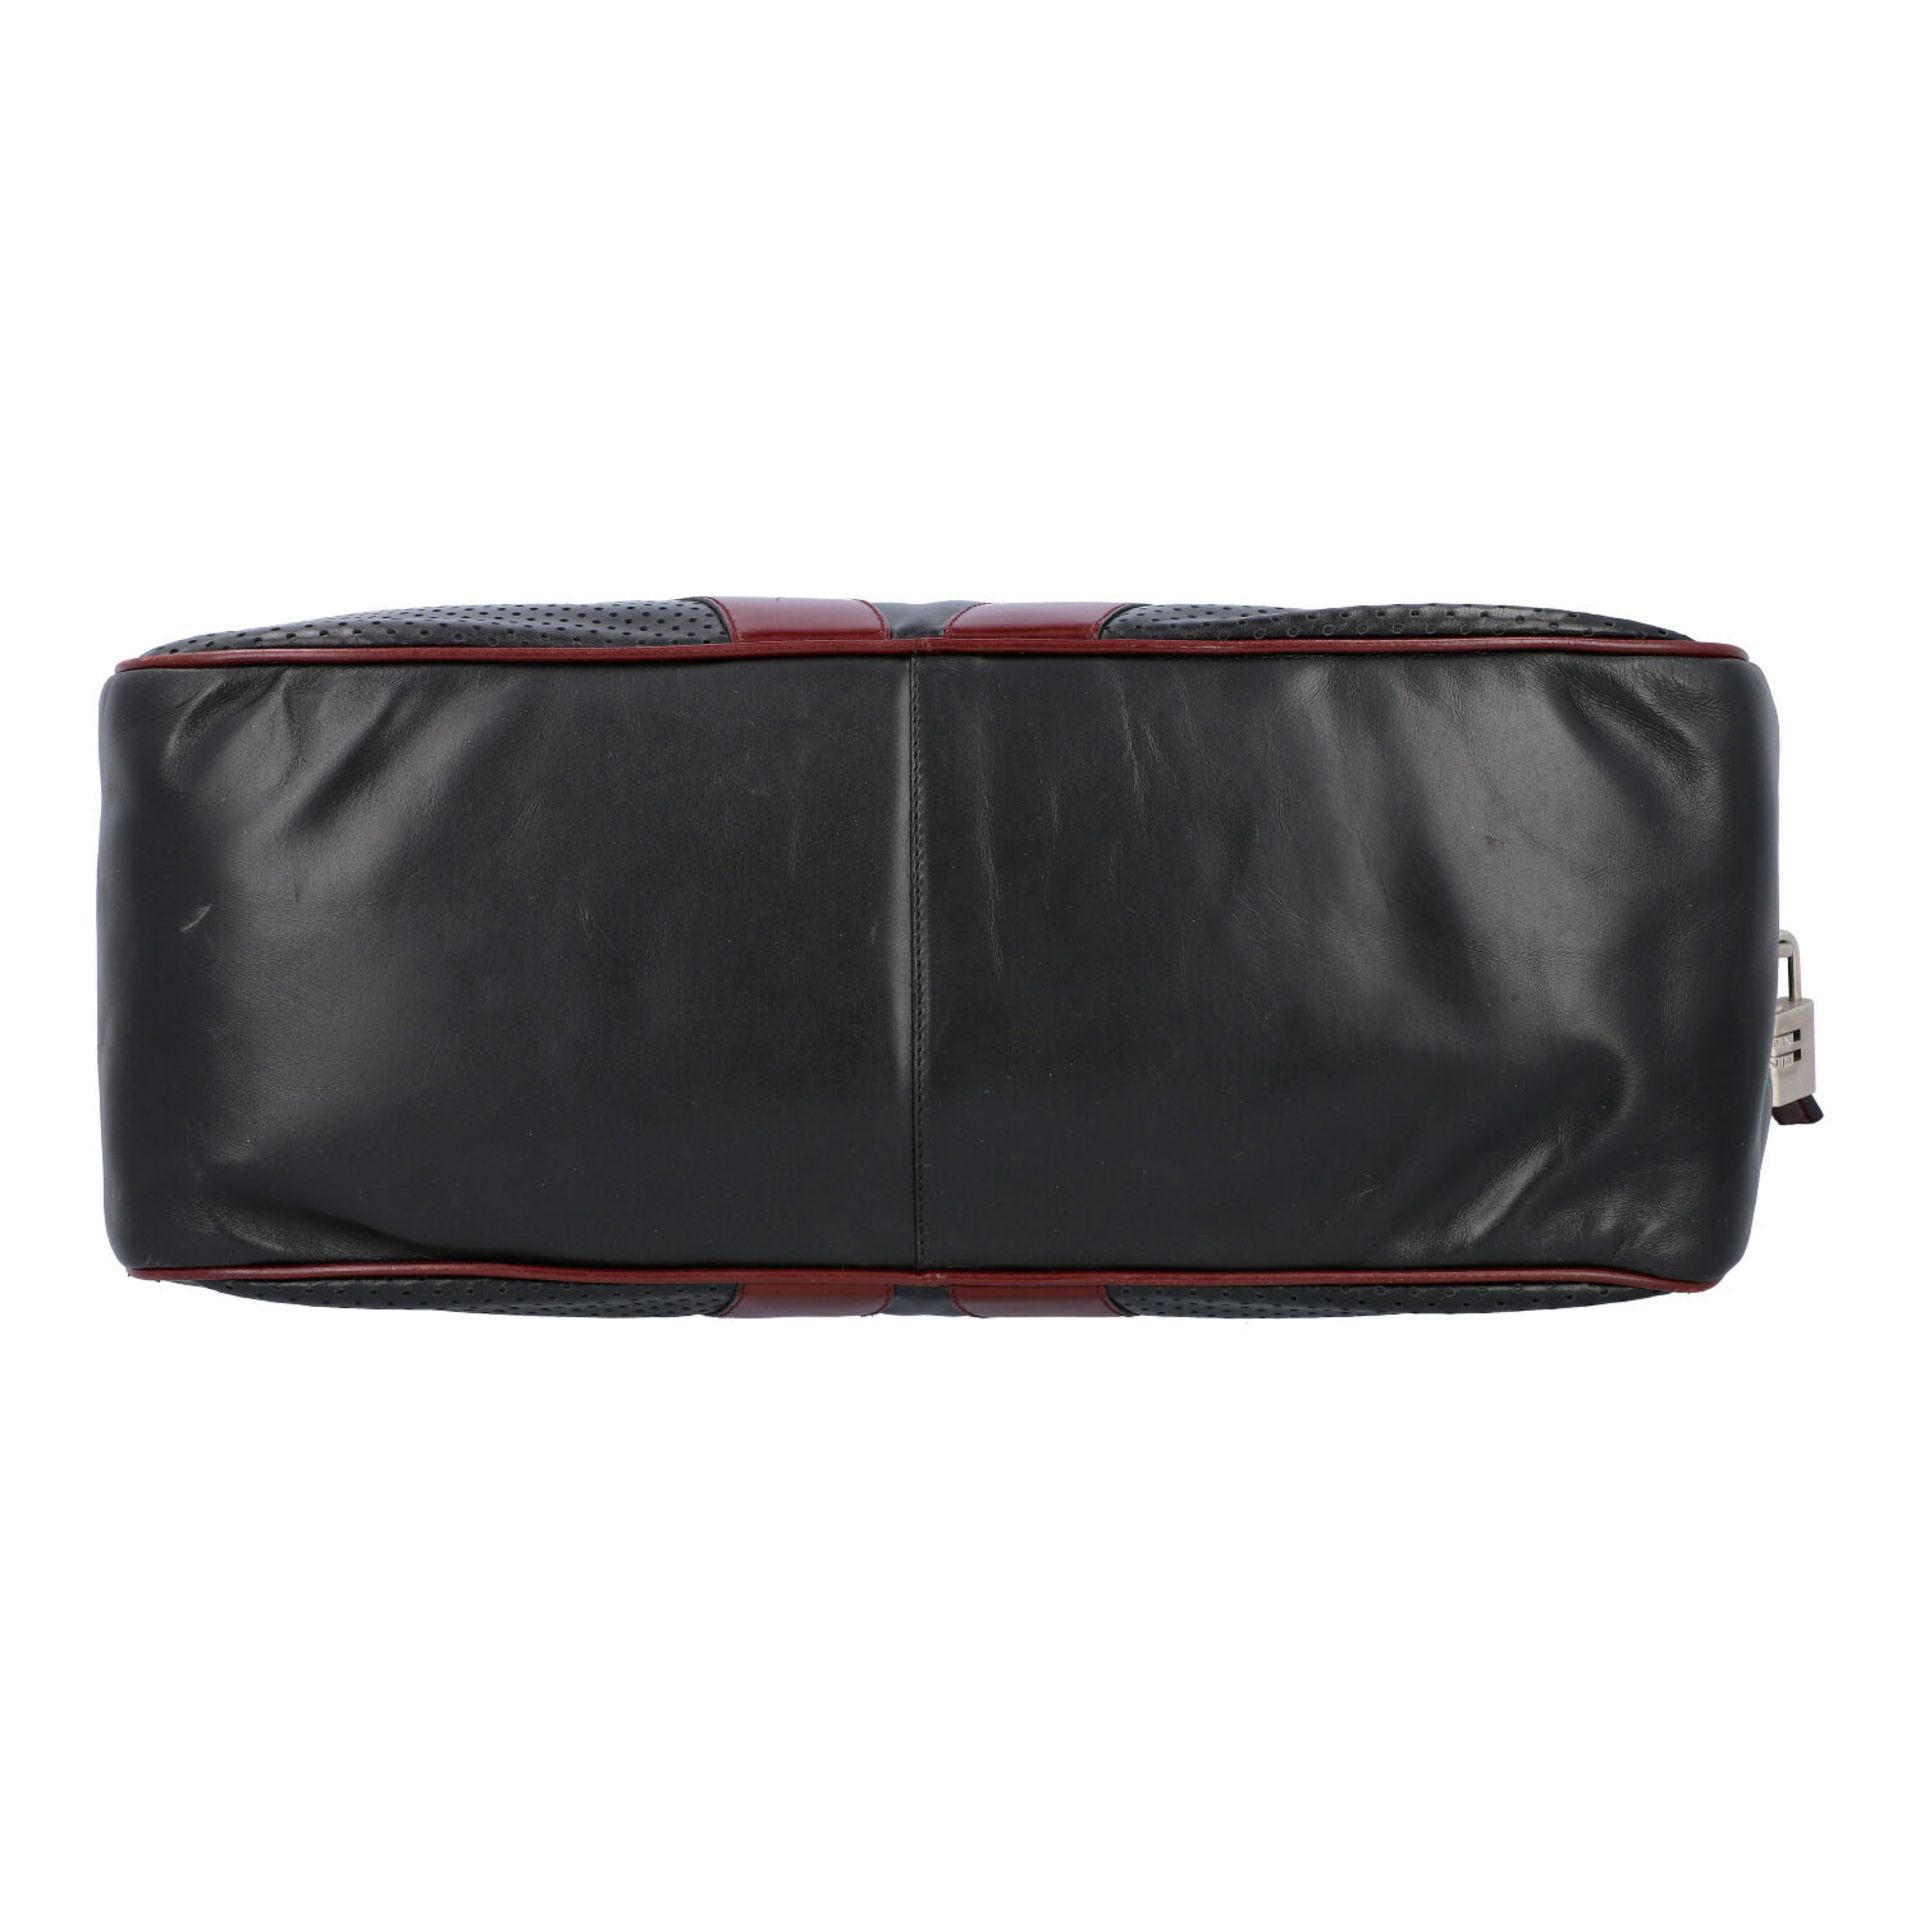 PRADA Handtasche. Glattleder in Schwarz und Bordeaux mit silberfarbener Hardware, umla - Bild 5 aus 8